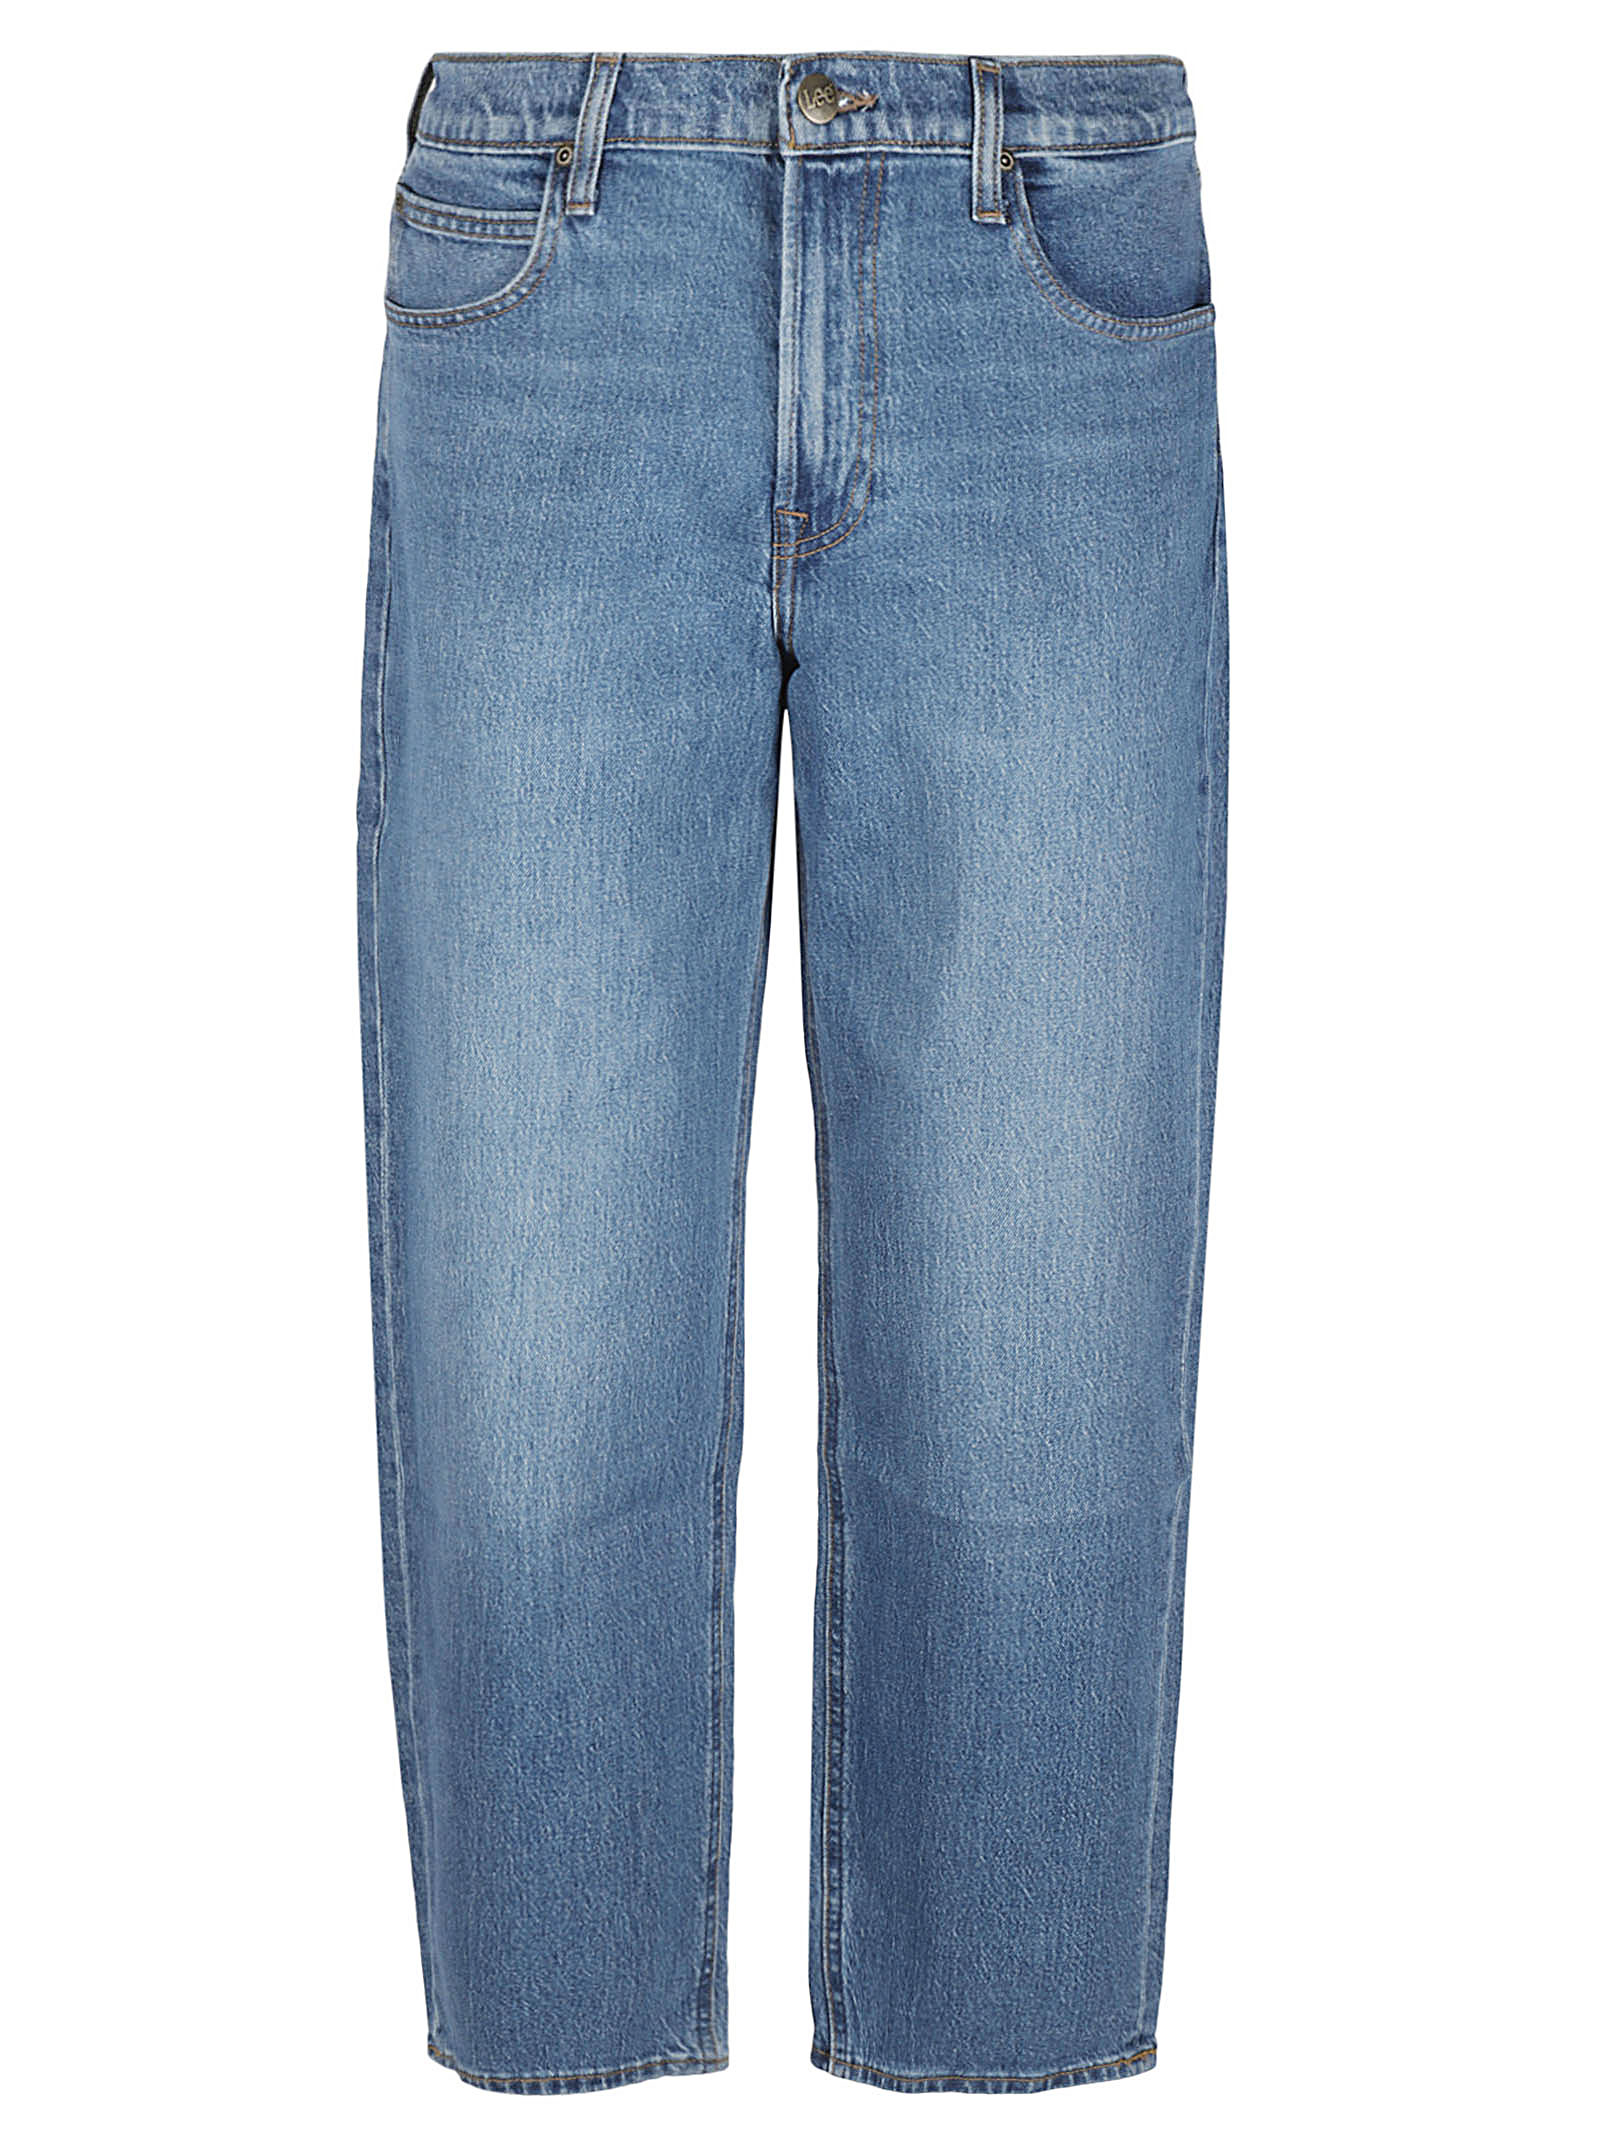 Lee Jeans LEE JEANS- Denim Cotton Jeans